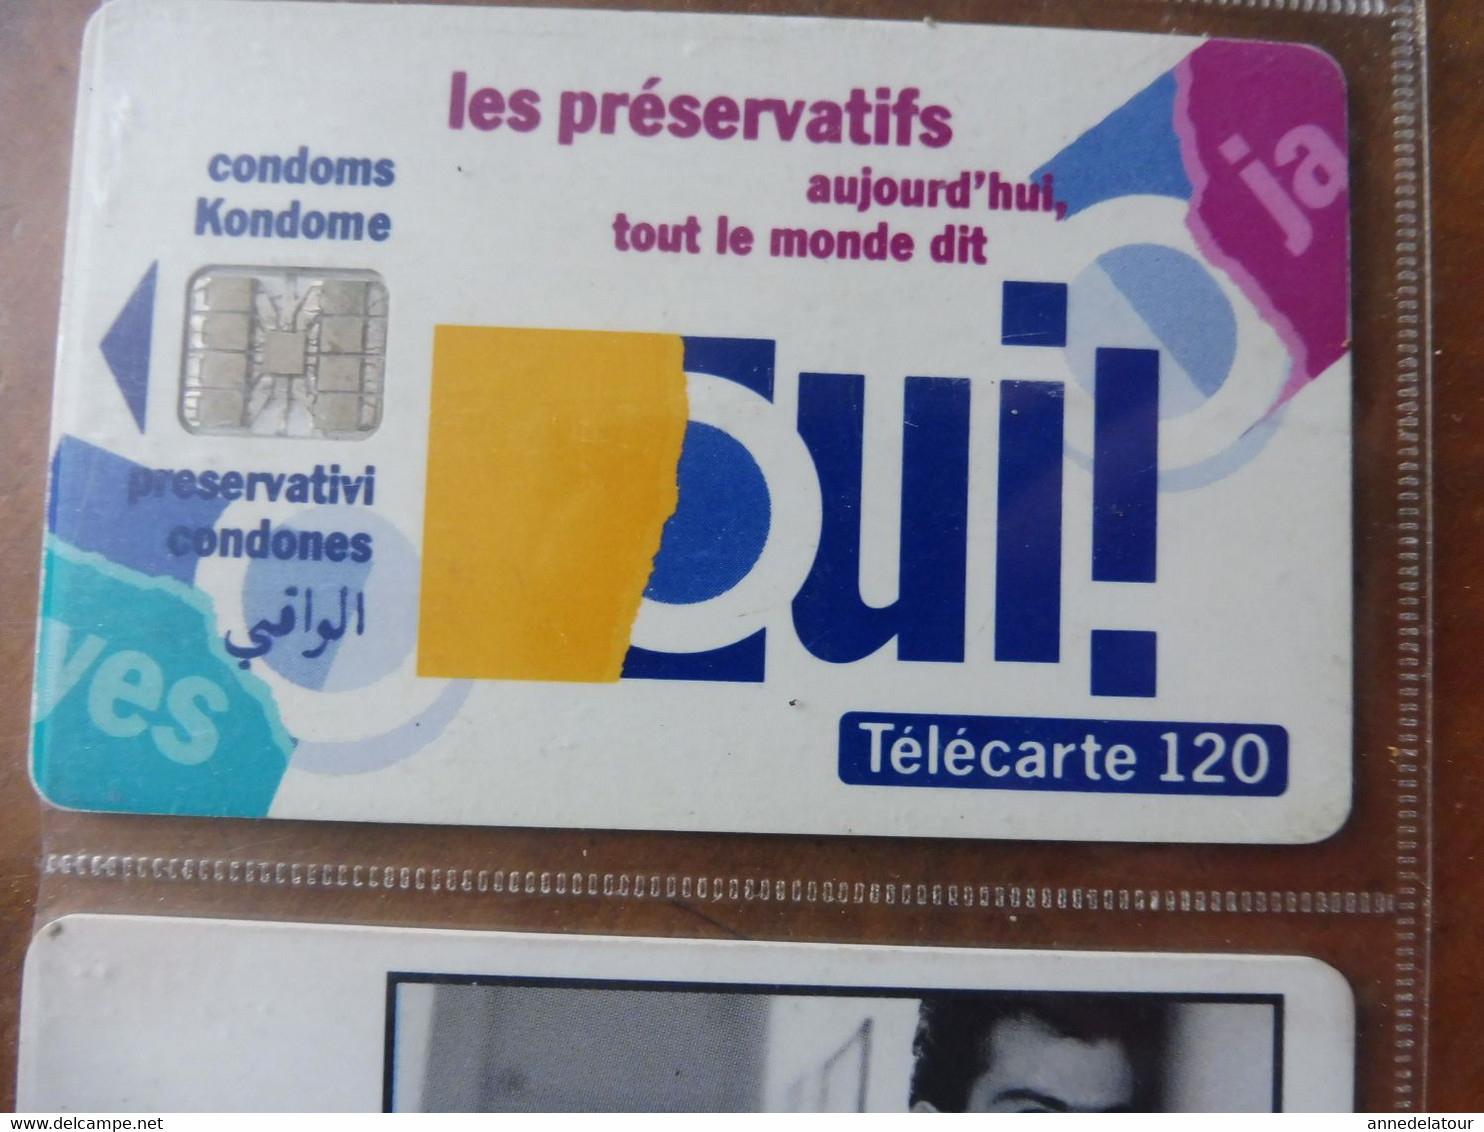 10 télécartes  FRANCE TELECOM   SIDA INFO SERVICE -  Marre d'être seul avec la dope, je suis séro depuis 90, etc